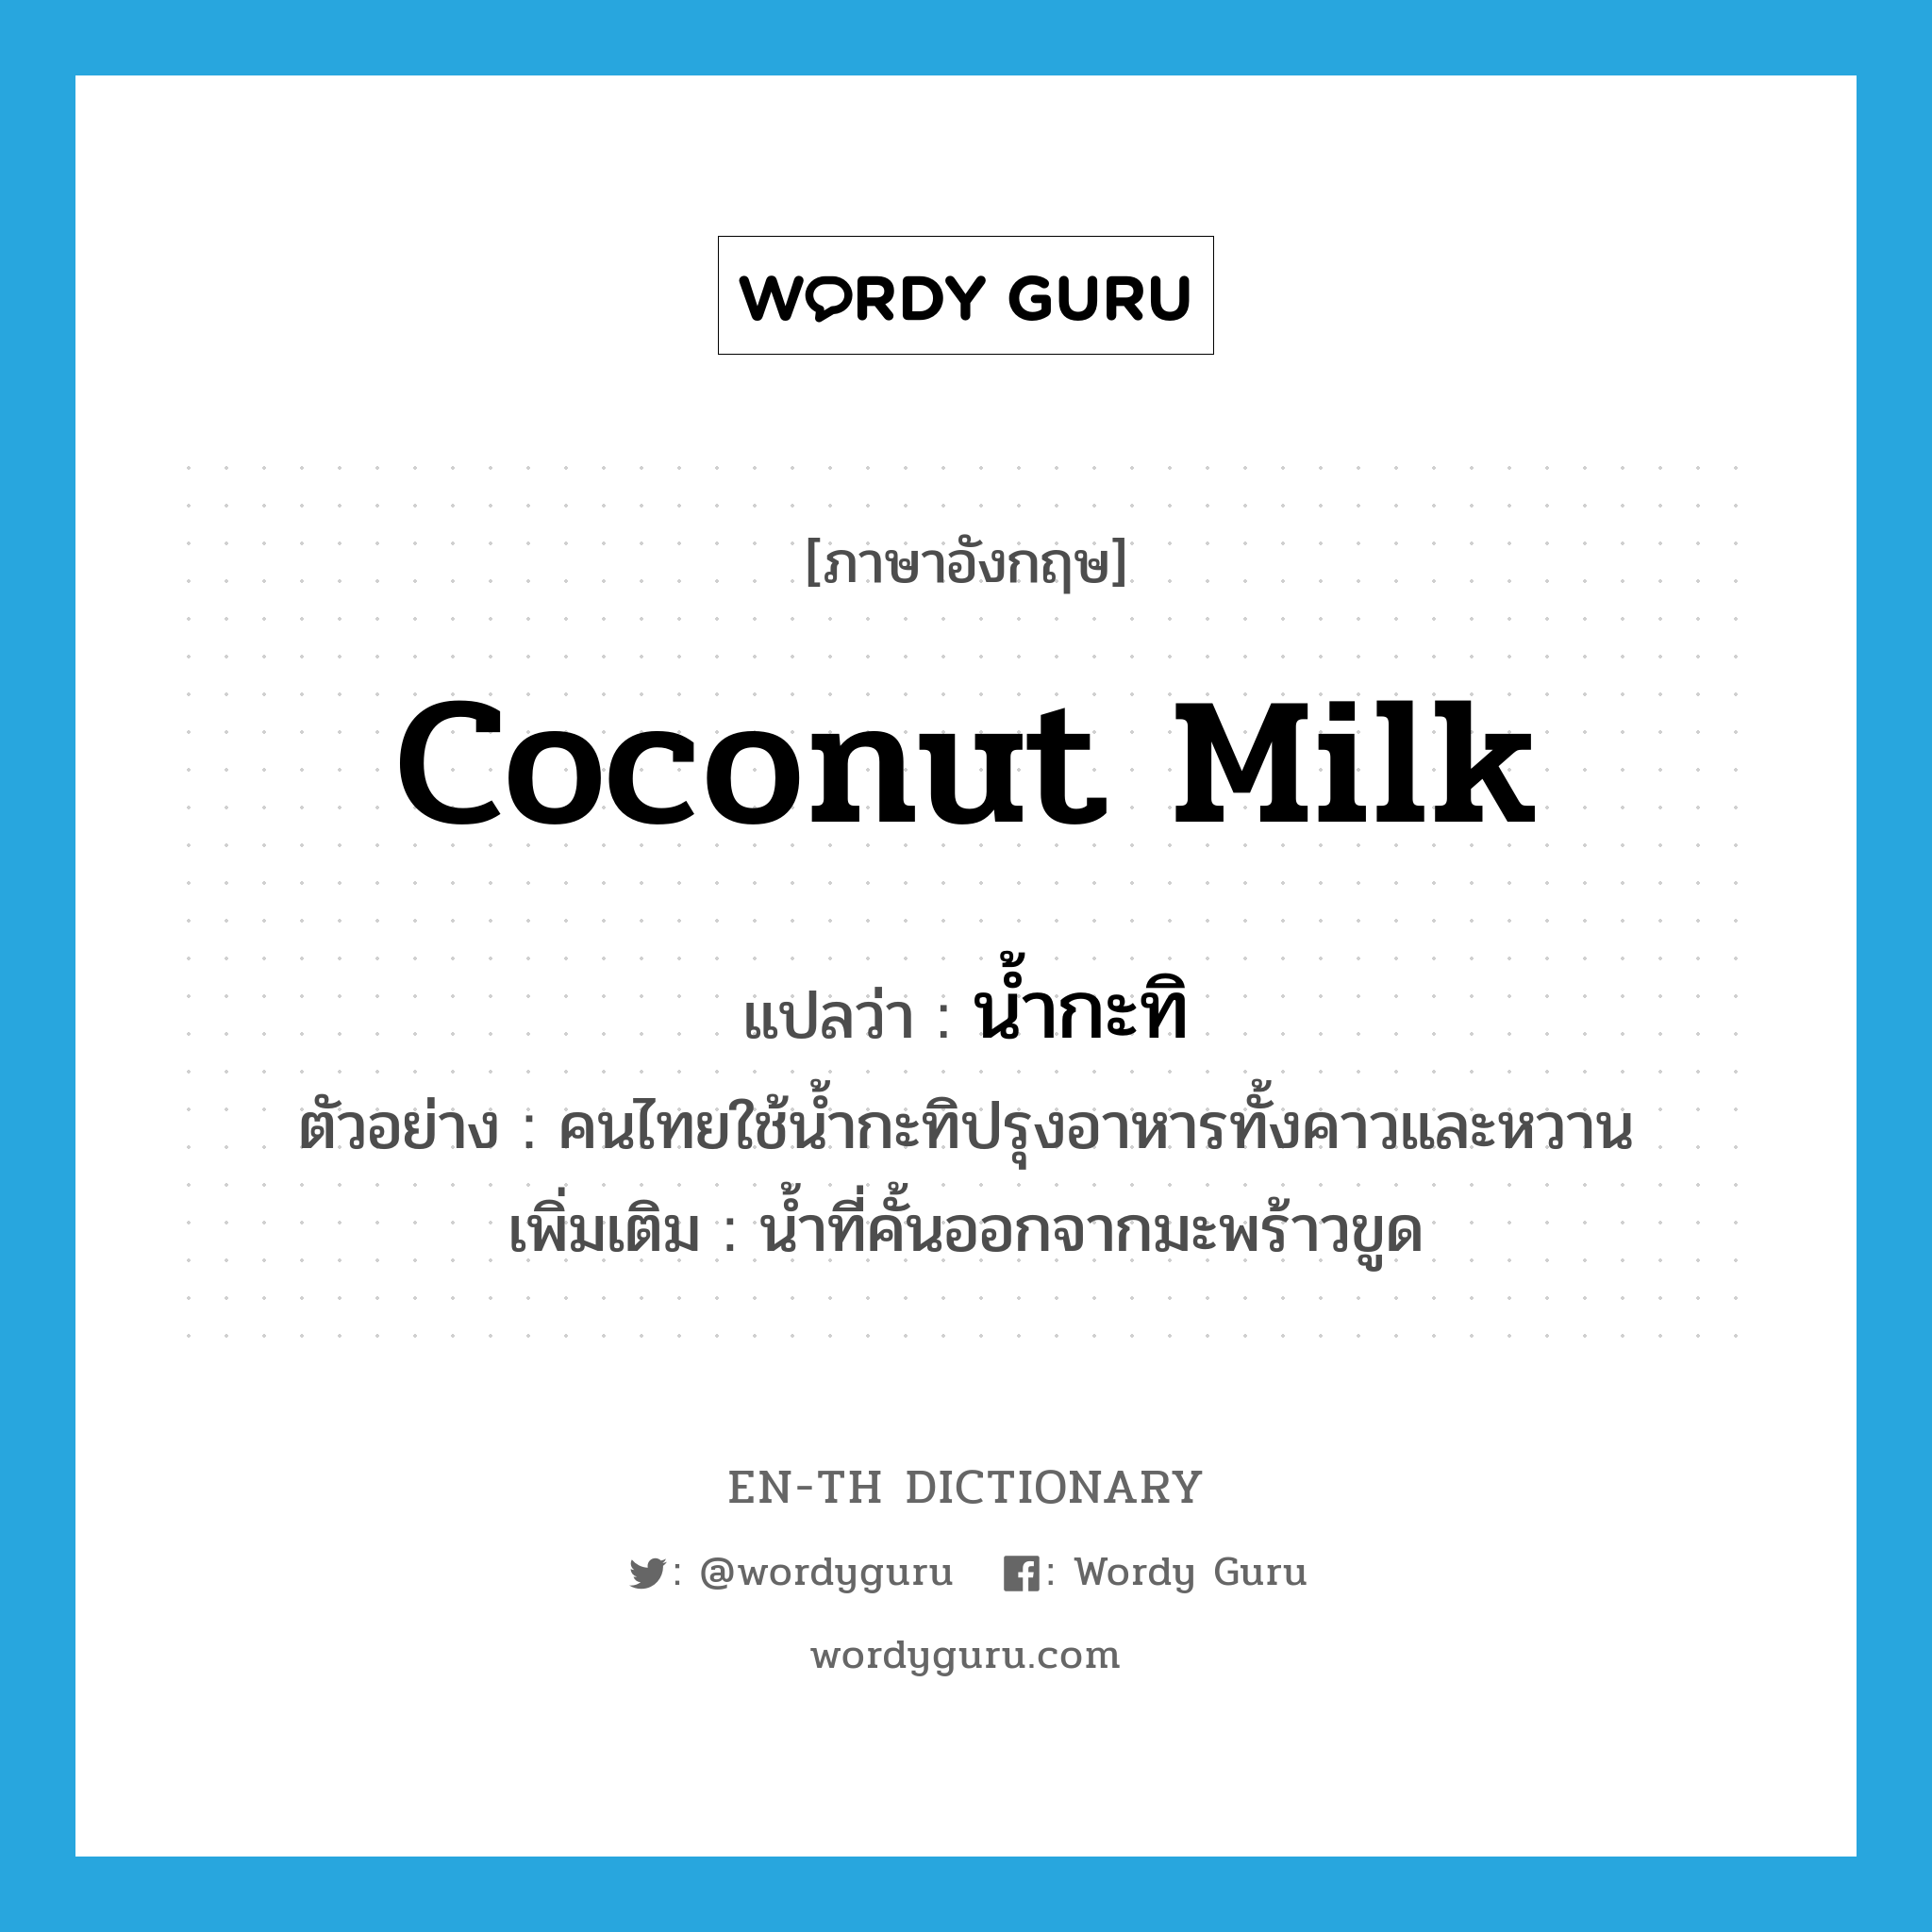 น้ำกะทิ ภาษาอังกฤษ?, คำศัพท์ภาษาอังกฤษ น้ำกะทิ แปลว่า coconut milk ประเภท N ตัวอย่าง คนไทยใช้น้ำกะทิปรุงอาหารทั้งคาวและหวาน เพิ่มเติม น้ำที่คั้นออกจากมะพร้าวขูด หมวด N